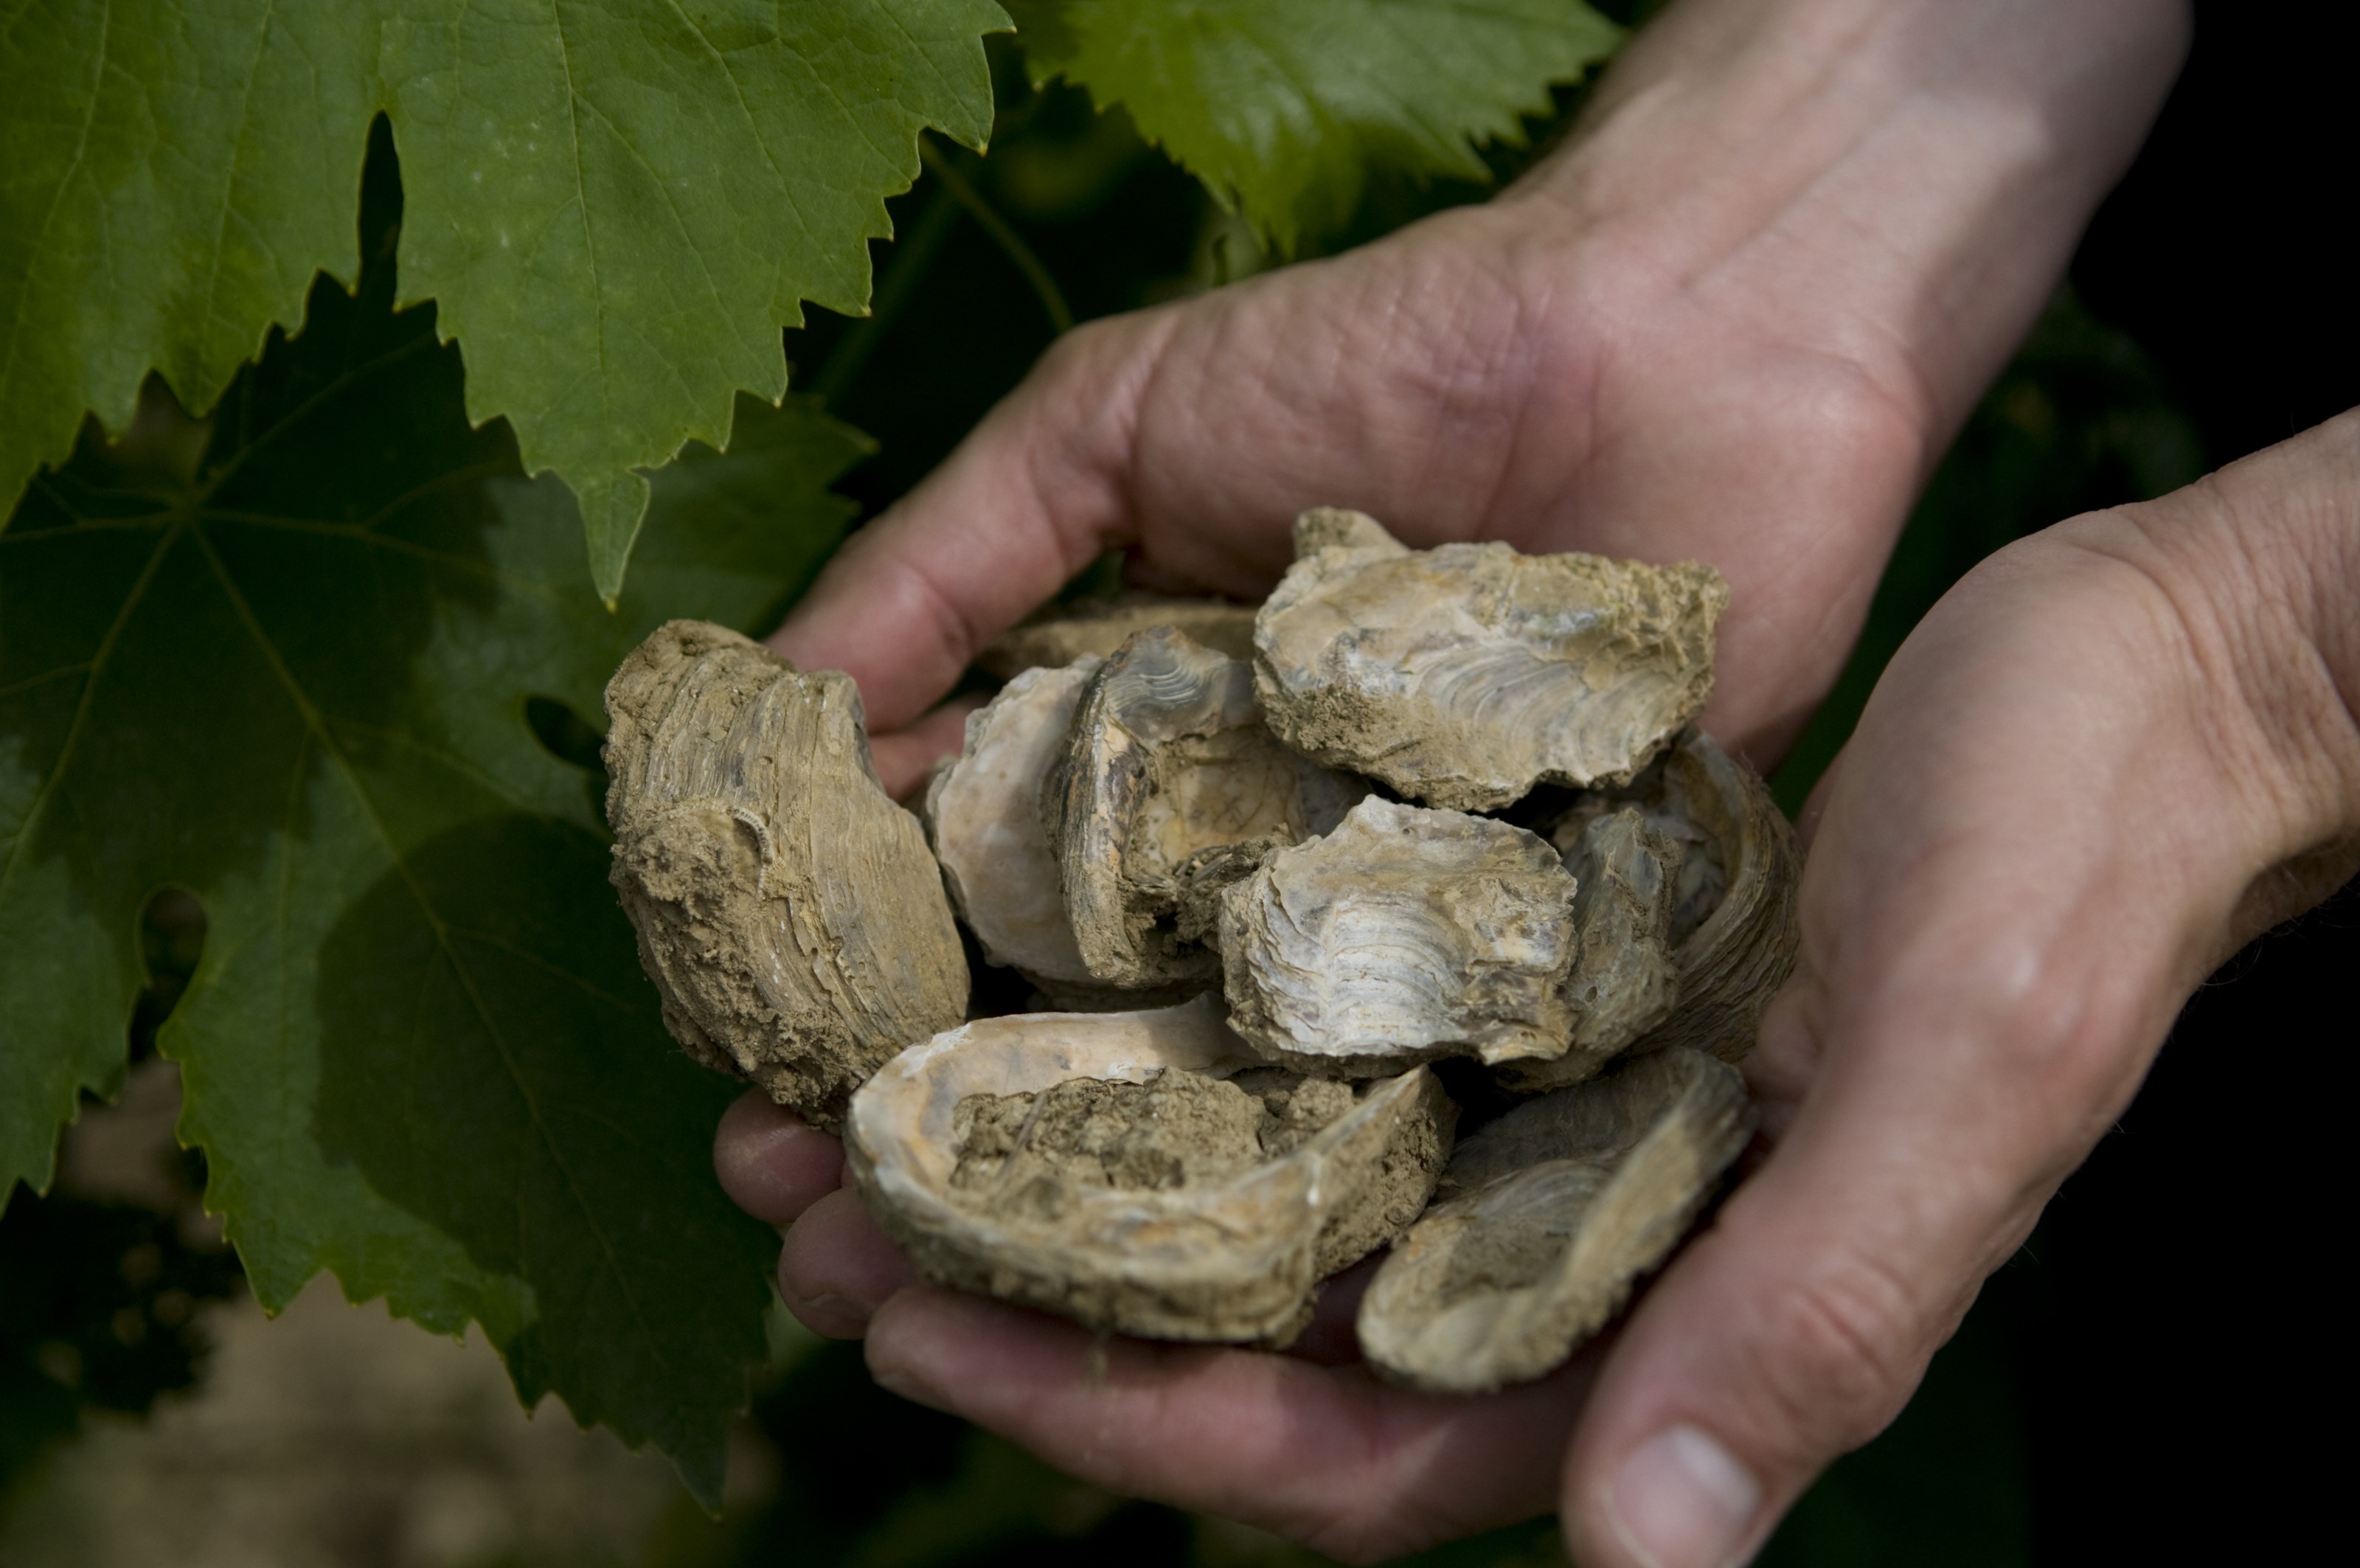 Poggiotondo ligger på vestsiden i Chianti, mellom Vinci og Cerreto Guidi. Jordsmonnet består av en blanding av kalk og marine sedimenter, som bidrar til eleganse og kompleksitet i de vinene. I dag består eiendommen av 50 hektar vinmark med sangiovese, merlot, syrah, canaiolo, trebbiano og malvasia som det produseres Chianti DOCG og IGT-viner fra. Vinmarkene befinner seg omtrent 100 meter over havet, og har høy plantetetthet (6250 vinstokker per hektar).